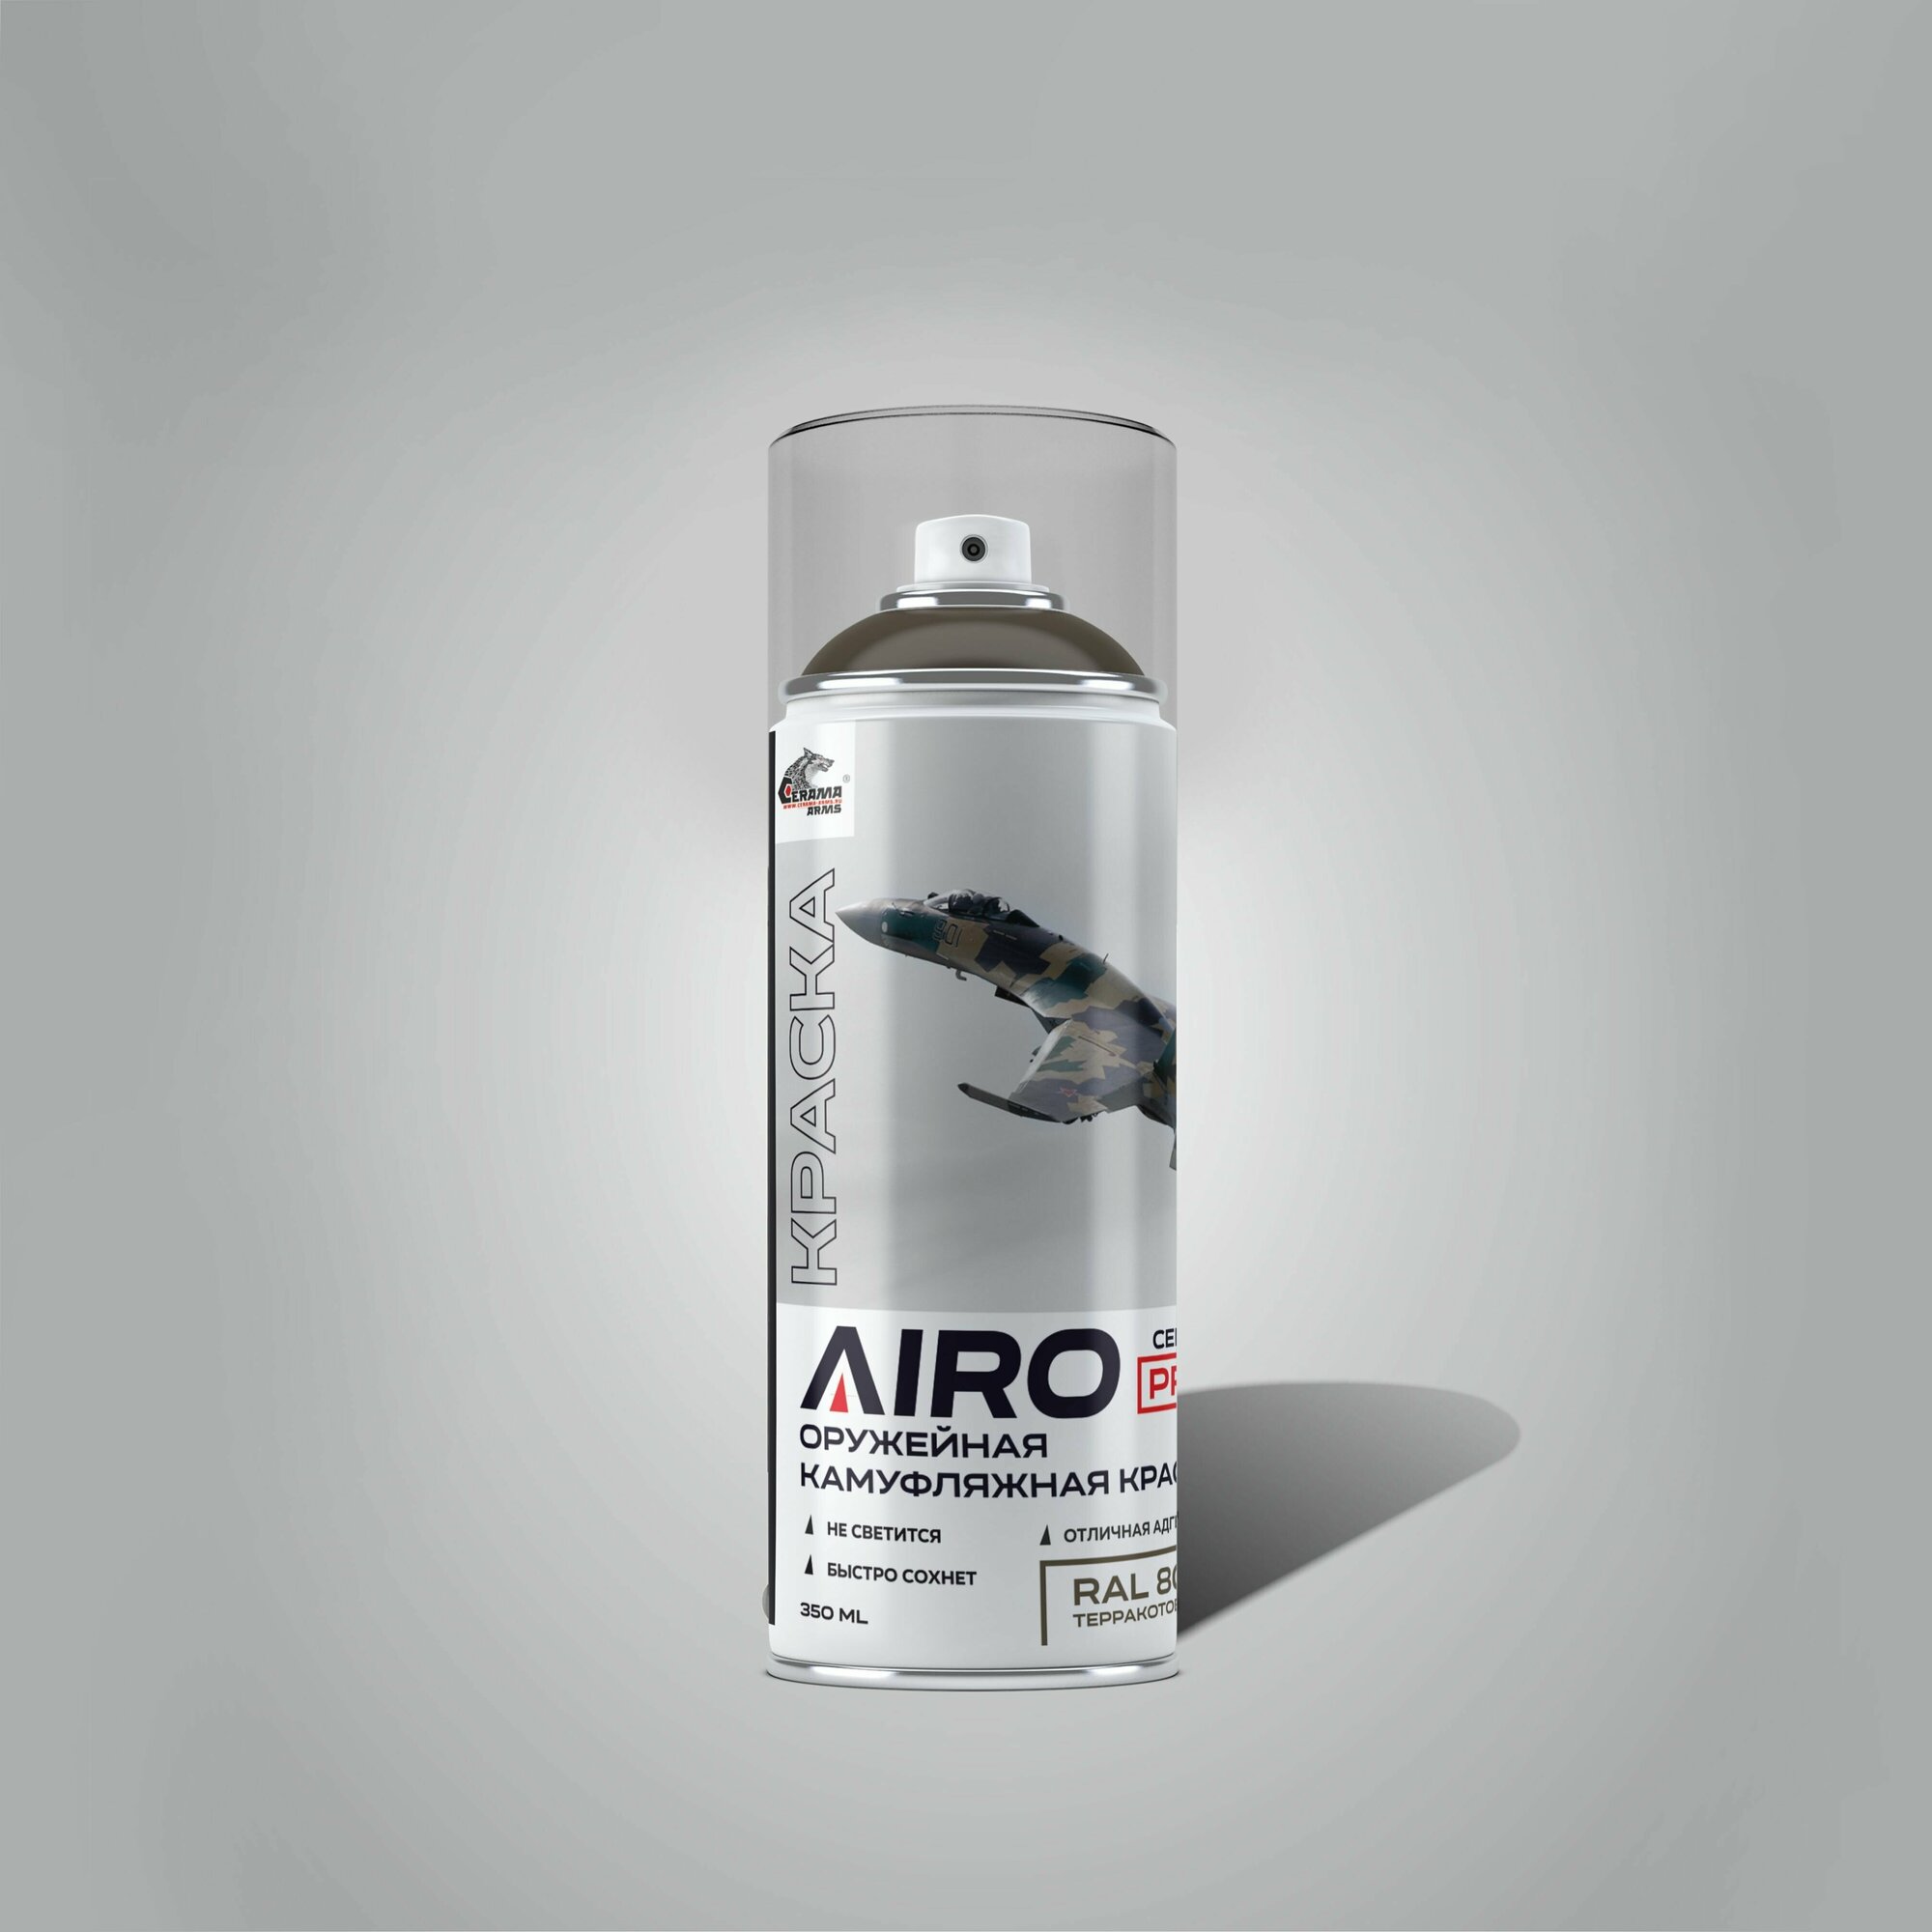 AIRO - PRO 8028 терракотовый CERAMA-ARMS Оружейная аэрозольная камуфляжная краска обьем 350/250 Ral 8028 цвет: TERRA BROWN / EARTHY BROWN